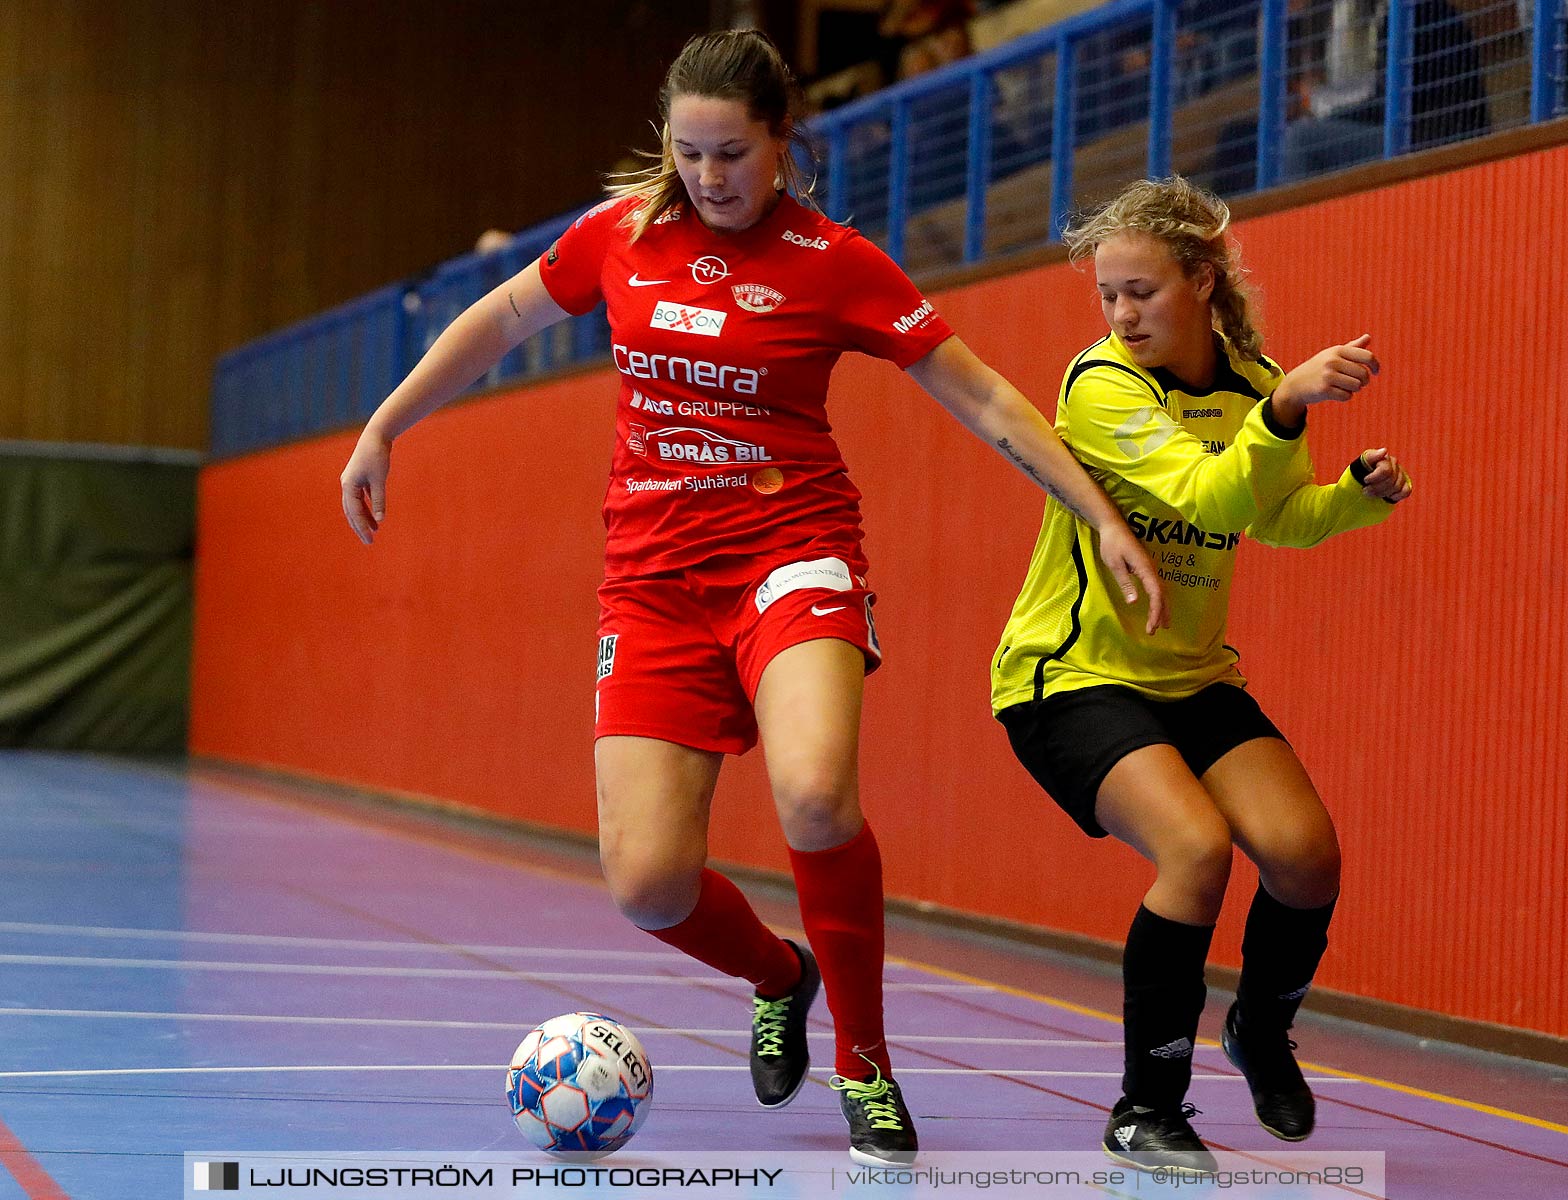 Skövde Futsalcup 2019 Damer Fagersanna/Mölltorp-Bergdalens IK,dam,Arena Skövde,Skövde,Sverige,Futsal,,2019,227769